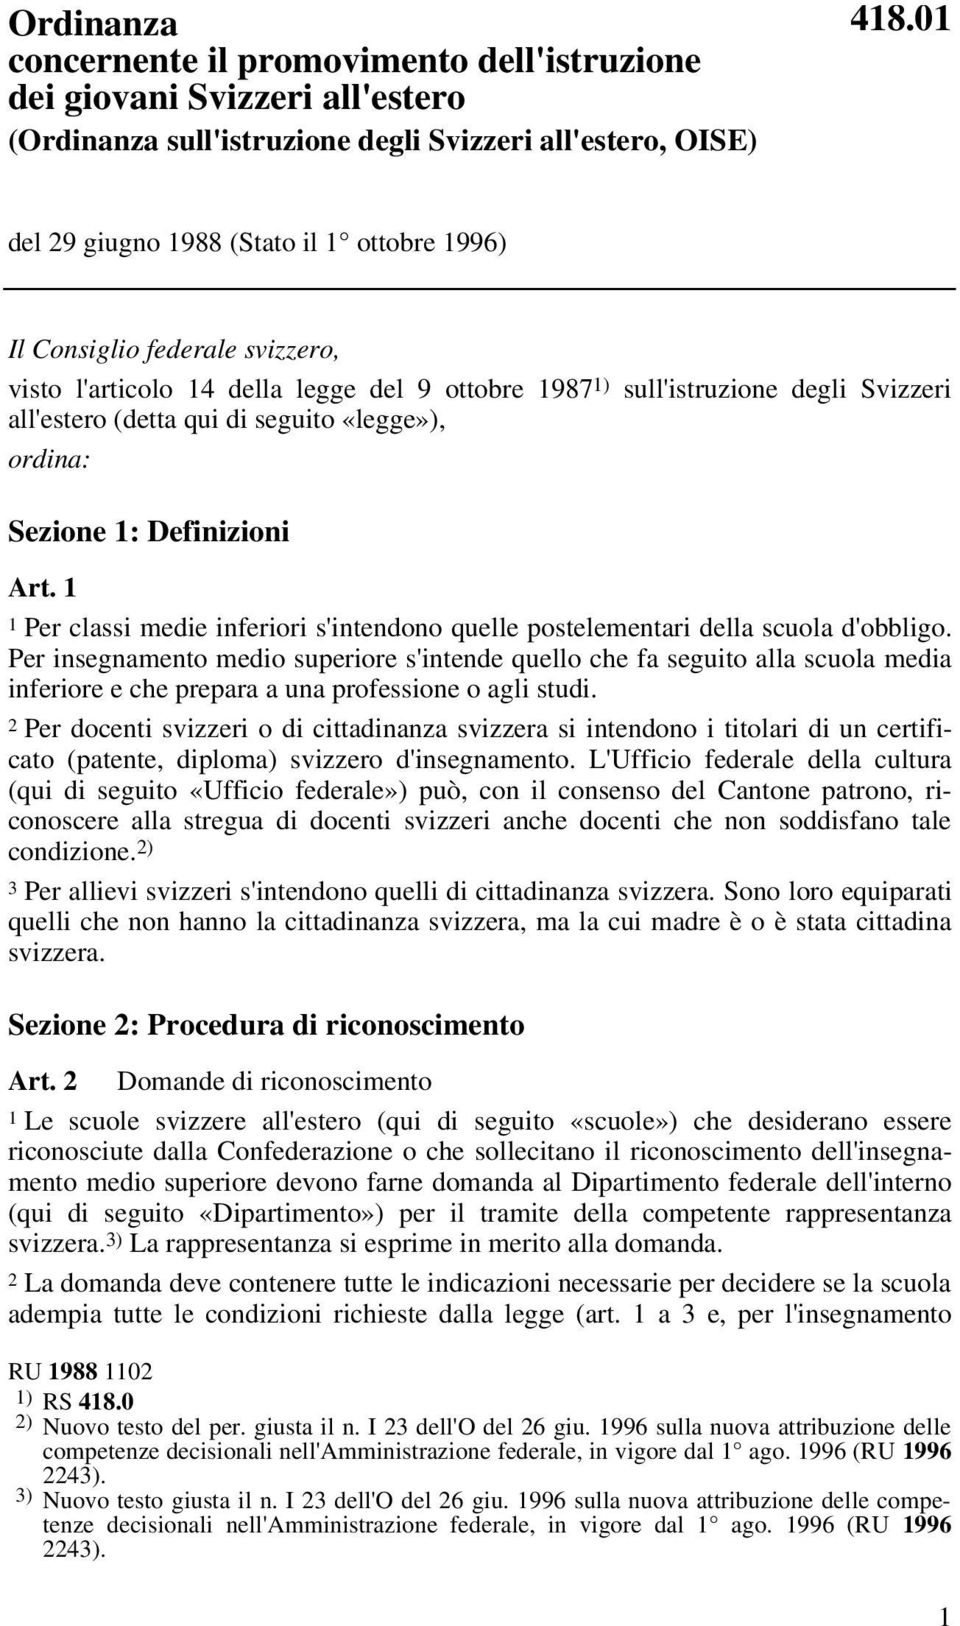 federale svizzero, visto l'articolo 14 della legge del 9 ottobre 1987 1) sull'istruzione degli Svizzeri all'estero (detta qui di seguito «legge»), ordina: Sezione 1: Definizioni Art.